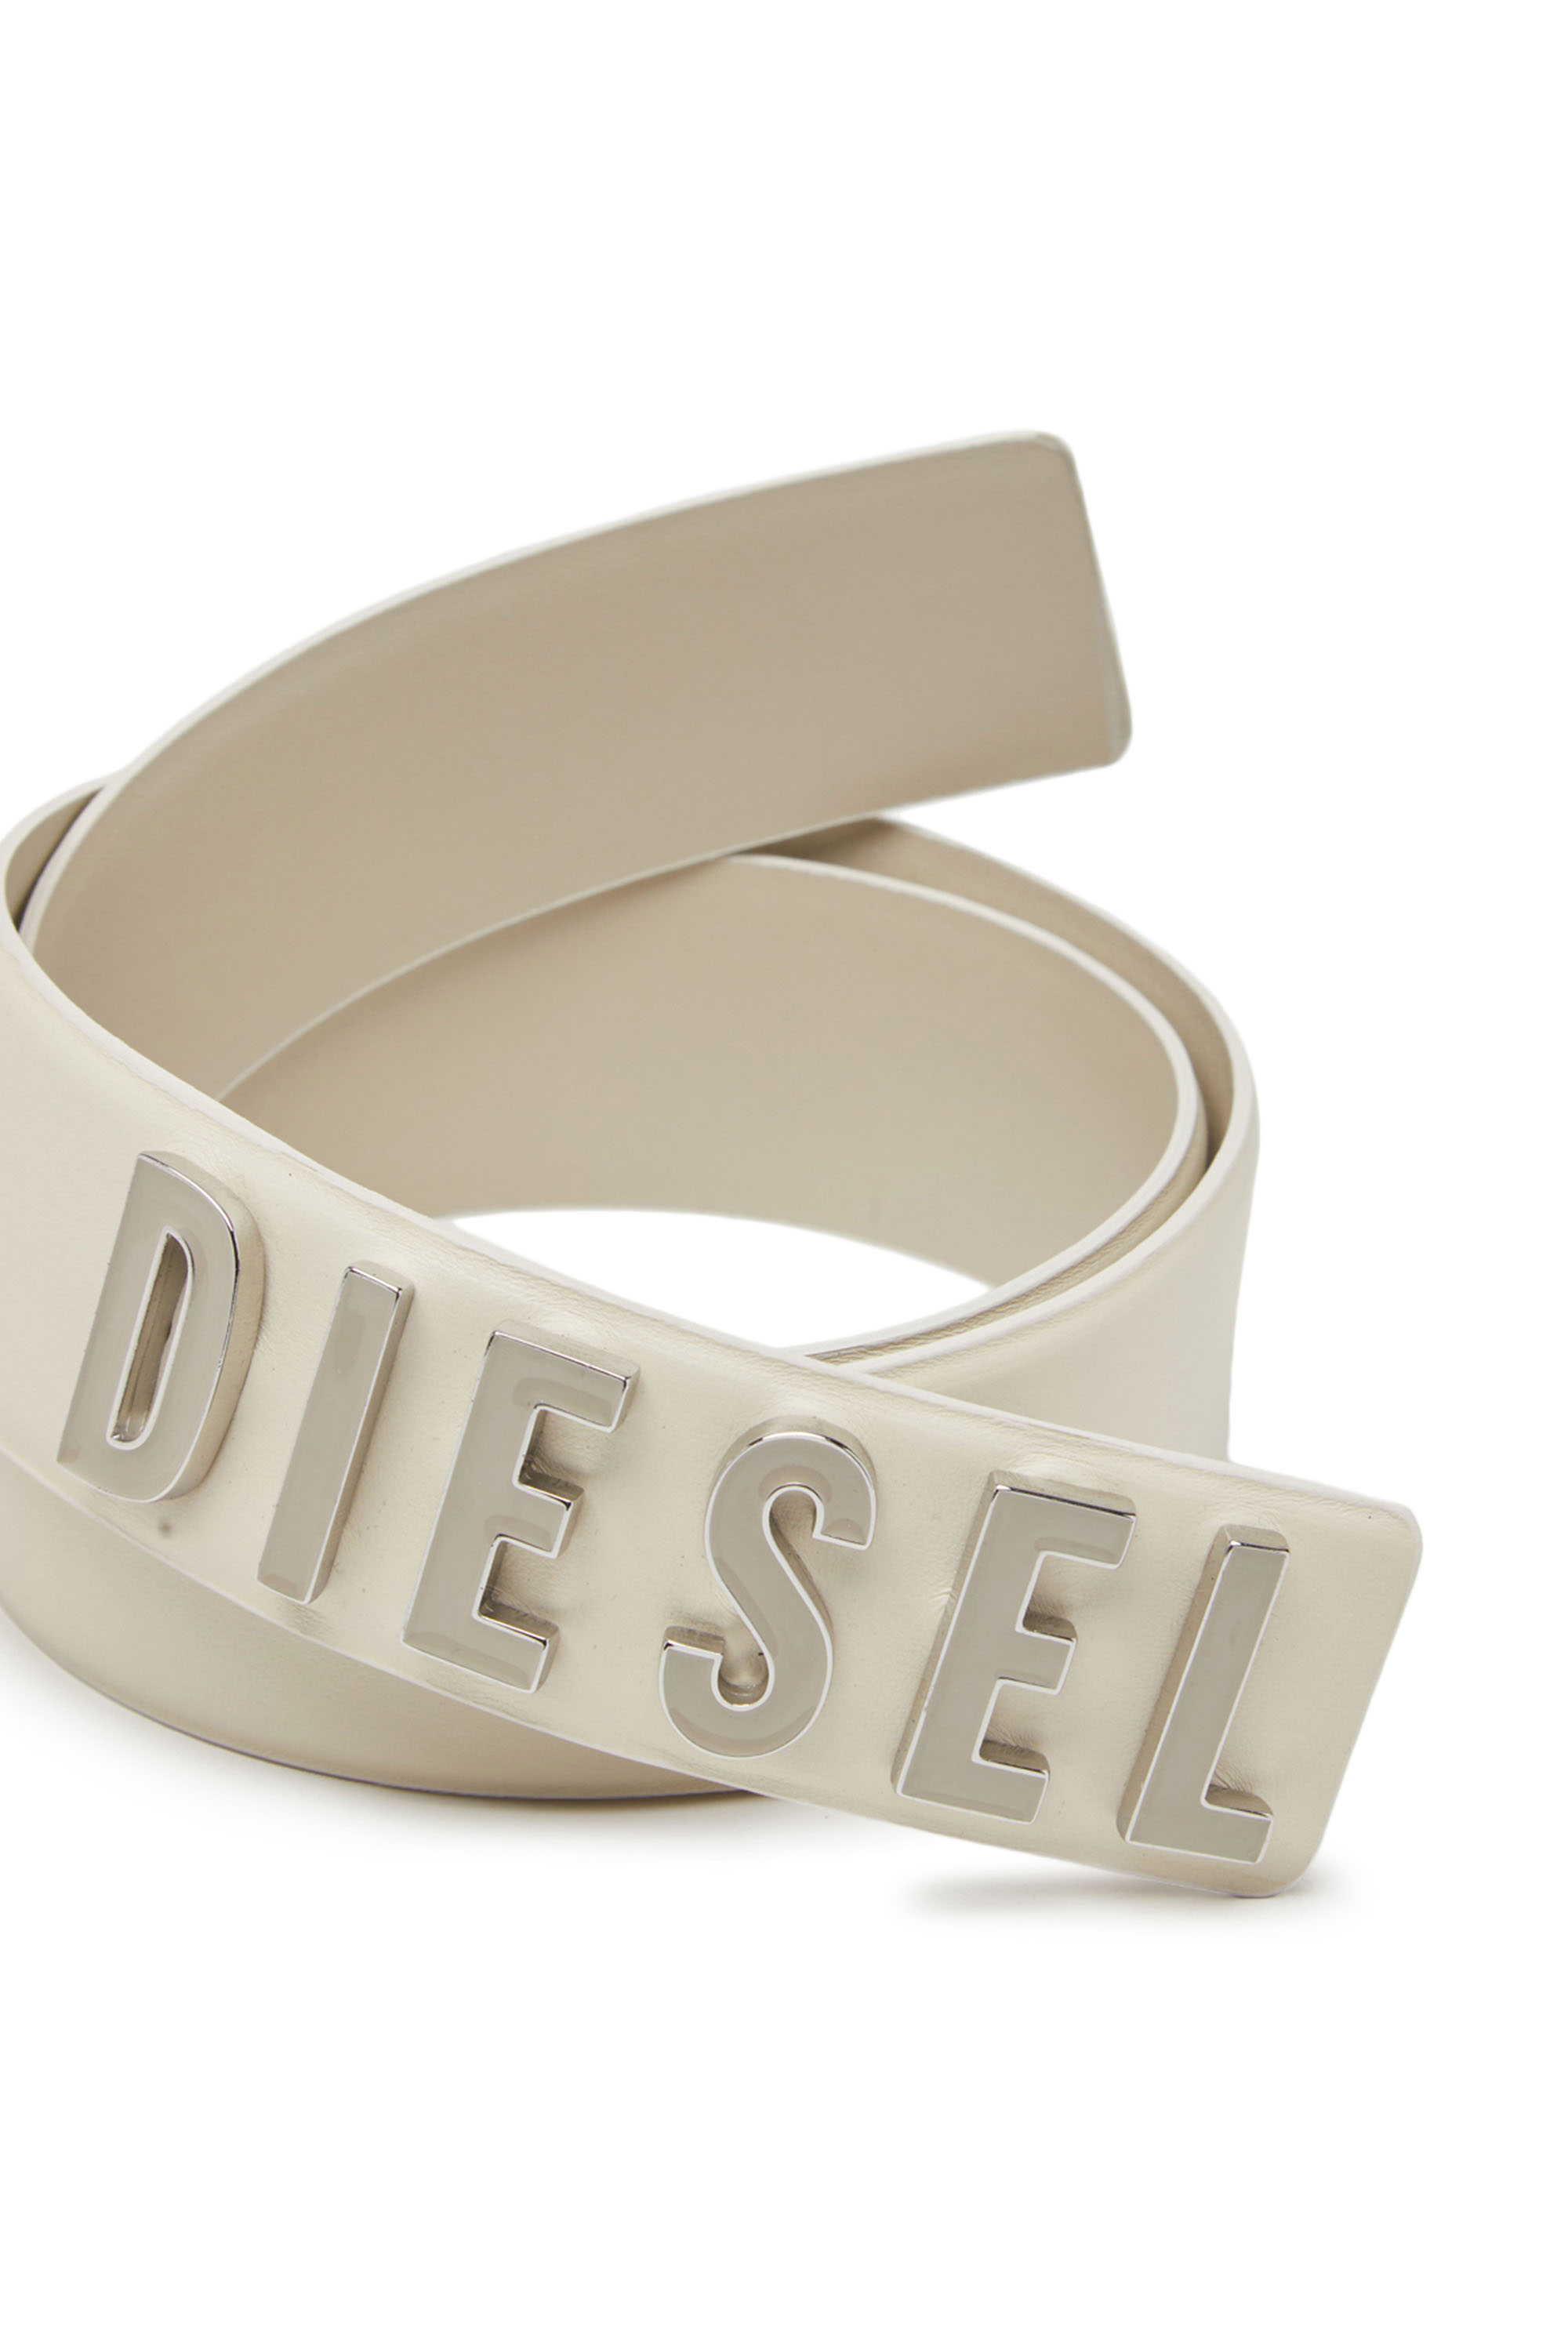 Diesel - B-LETTERS B, Blanc - Image 3